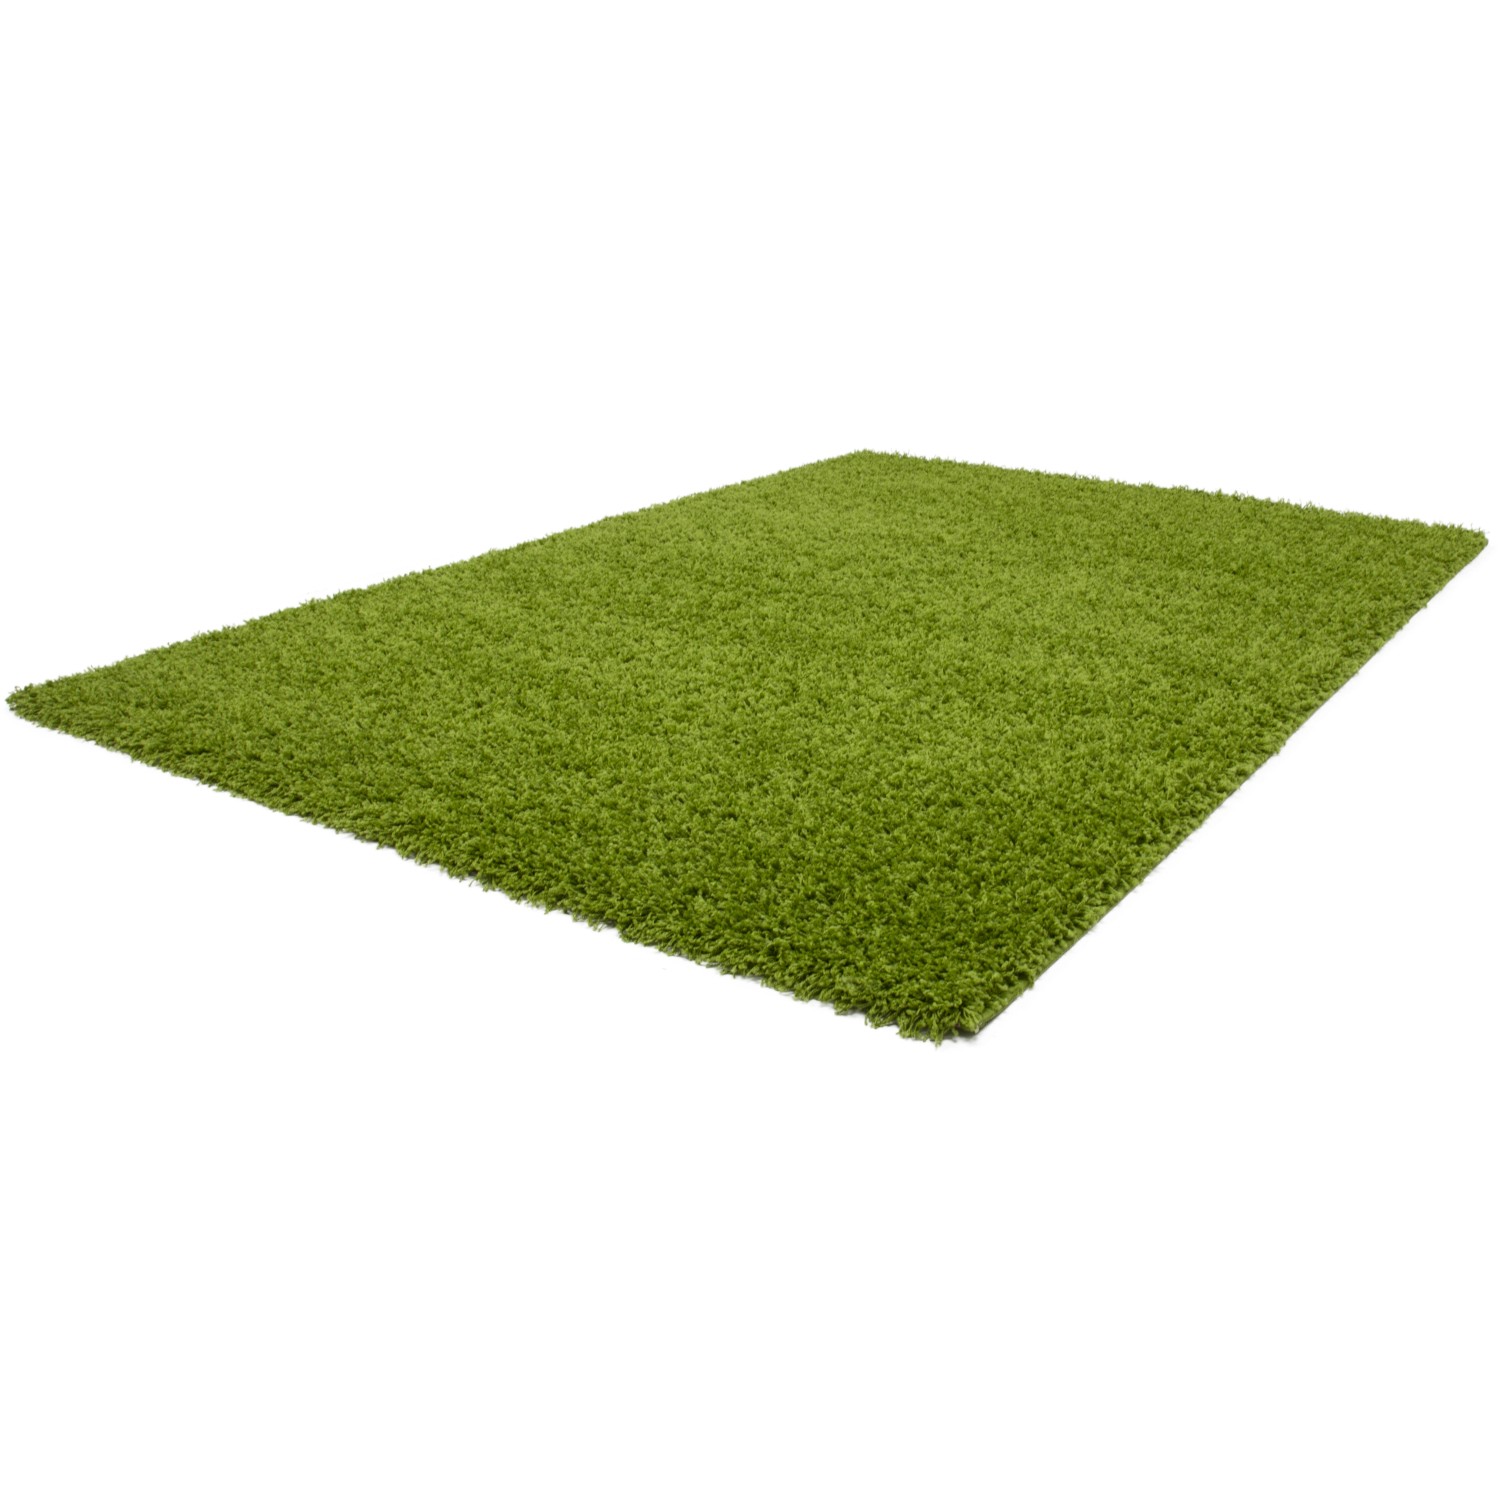 Teppiche grün kaufen - OBI für Heim, Haus, Garten und Bau